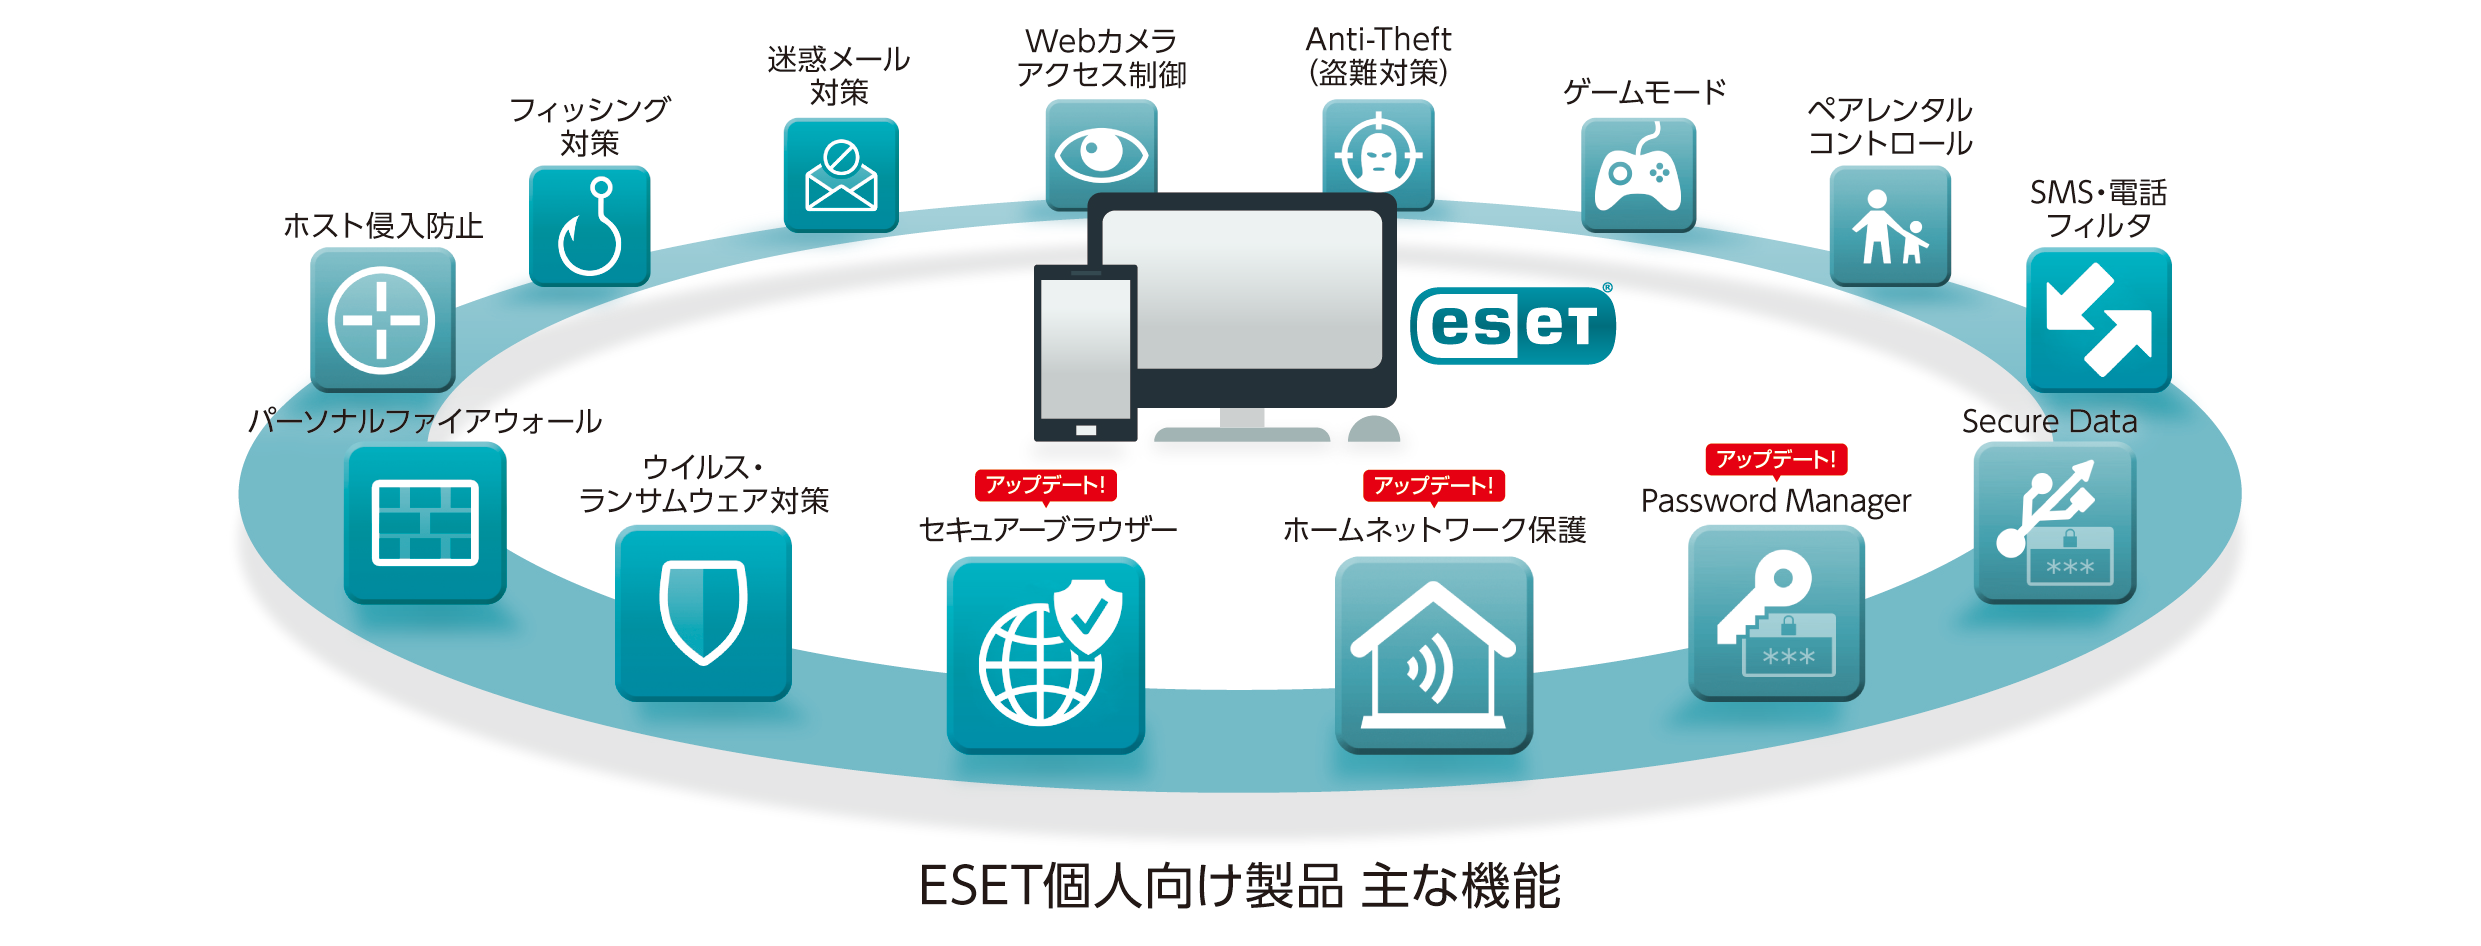 Eset個人向け製品の新バージョンを提供開始 ニュースリリース ニュースリリース 企業情報 キヤノンマーケティングジャパングループ